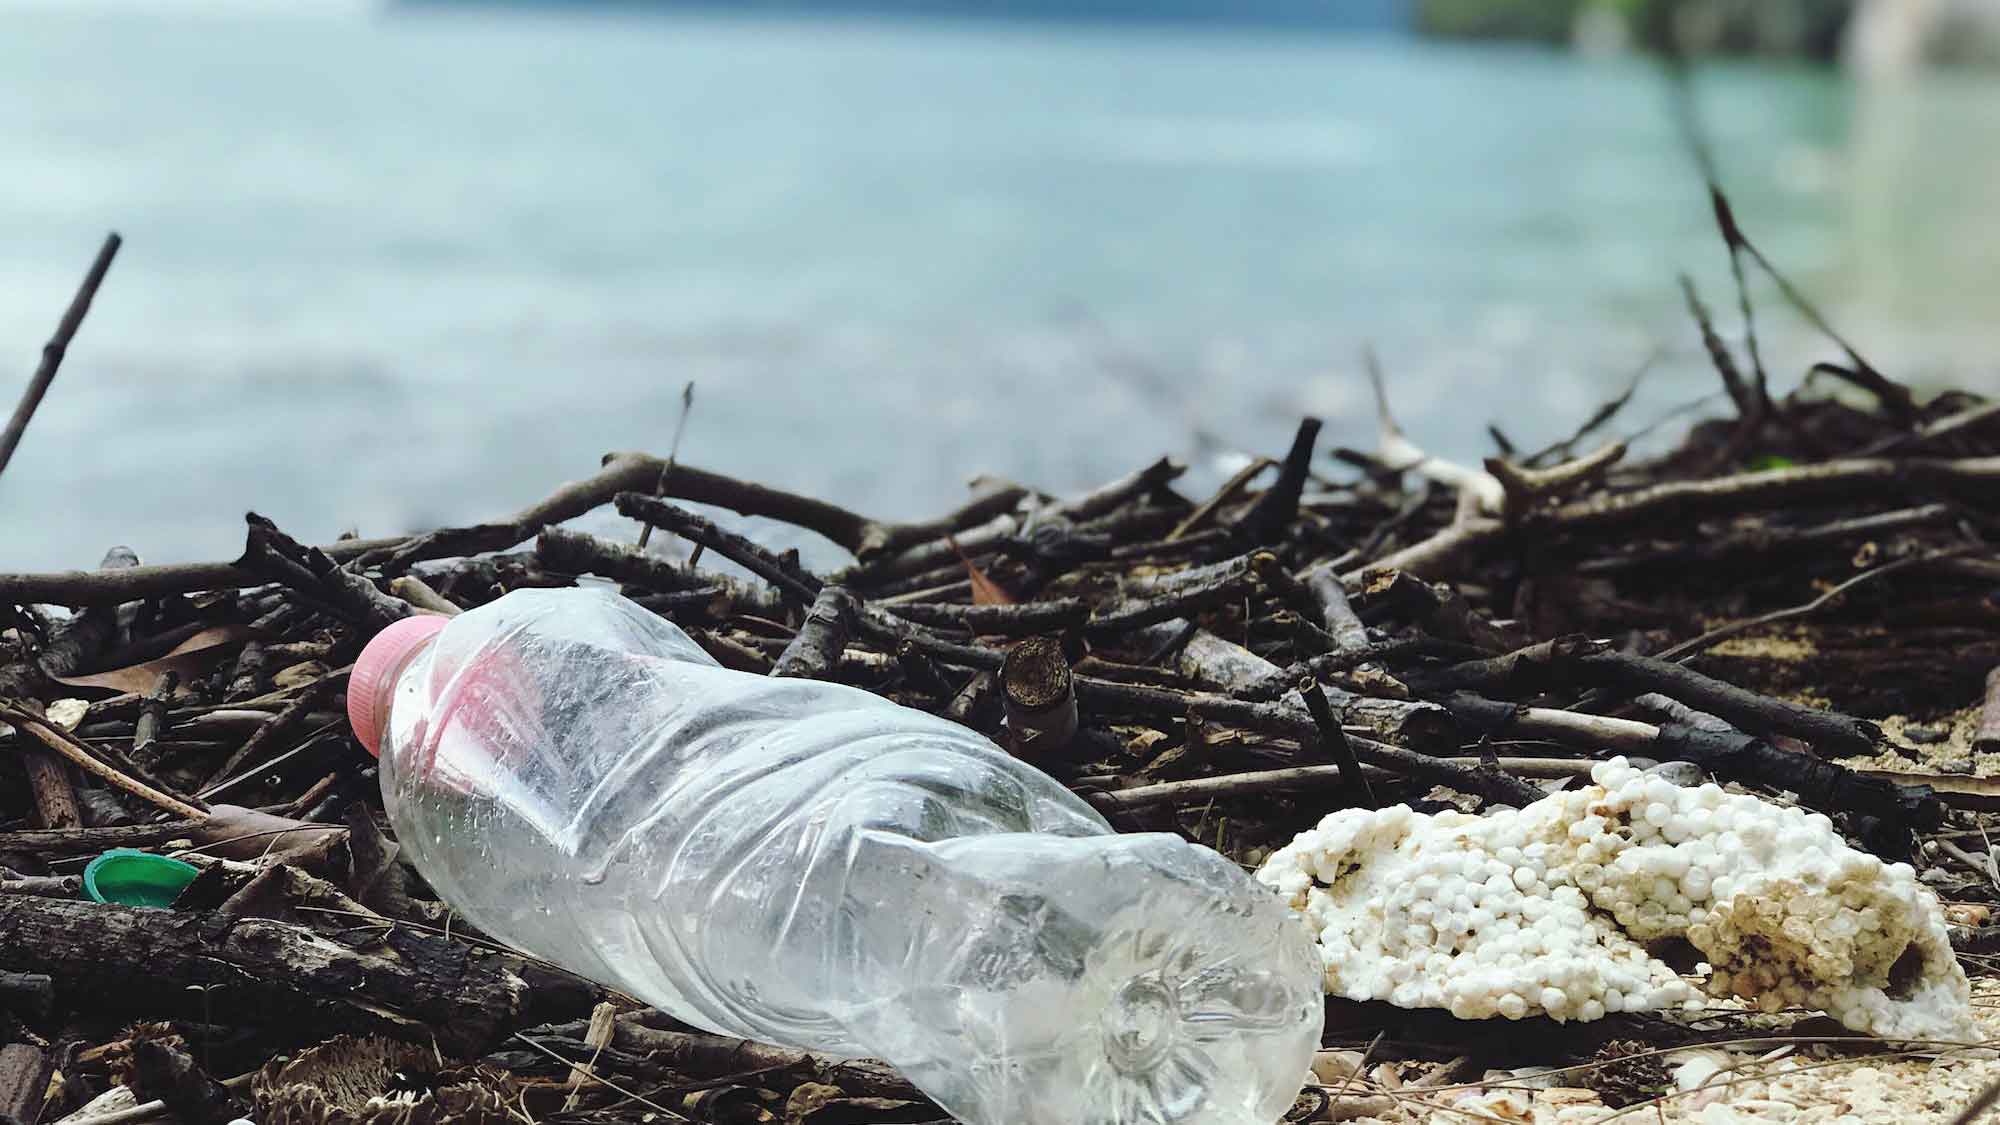 Eindämmung des Plastikmülls muss mit konsequent politischer Reglementierung vorangetrieben werden